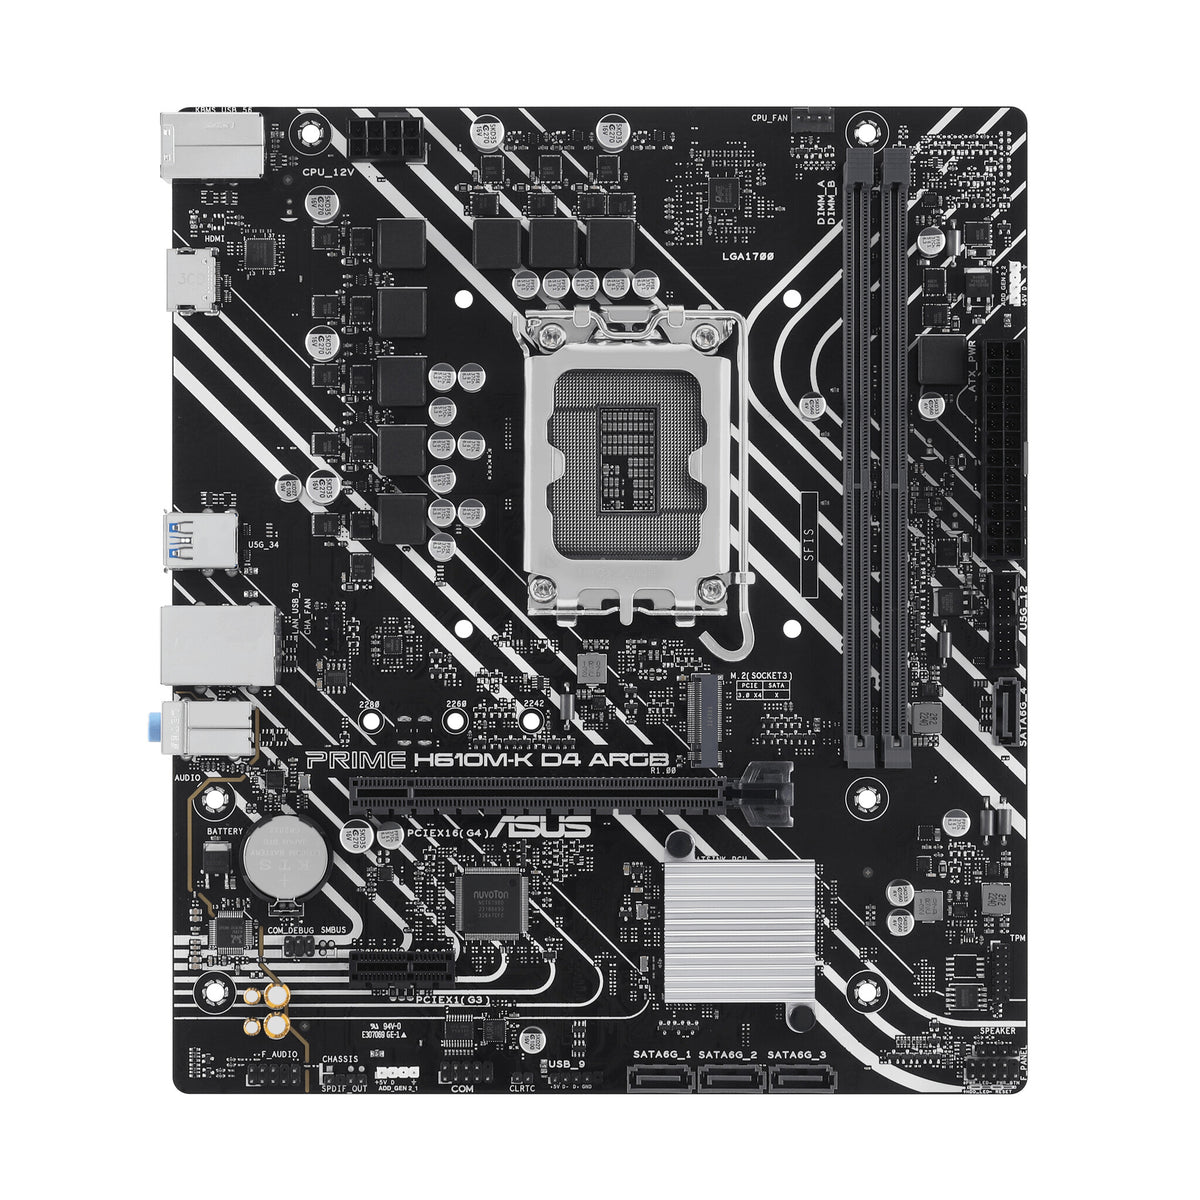 ASUS PRIME H610M-K D4 ARGB micro ATX motherboard - Intel H610 LGA 1700